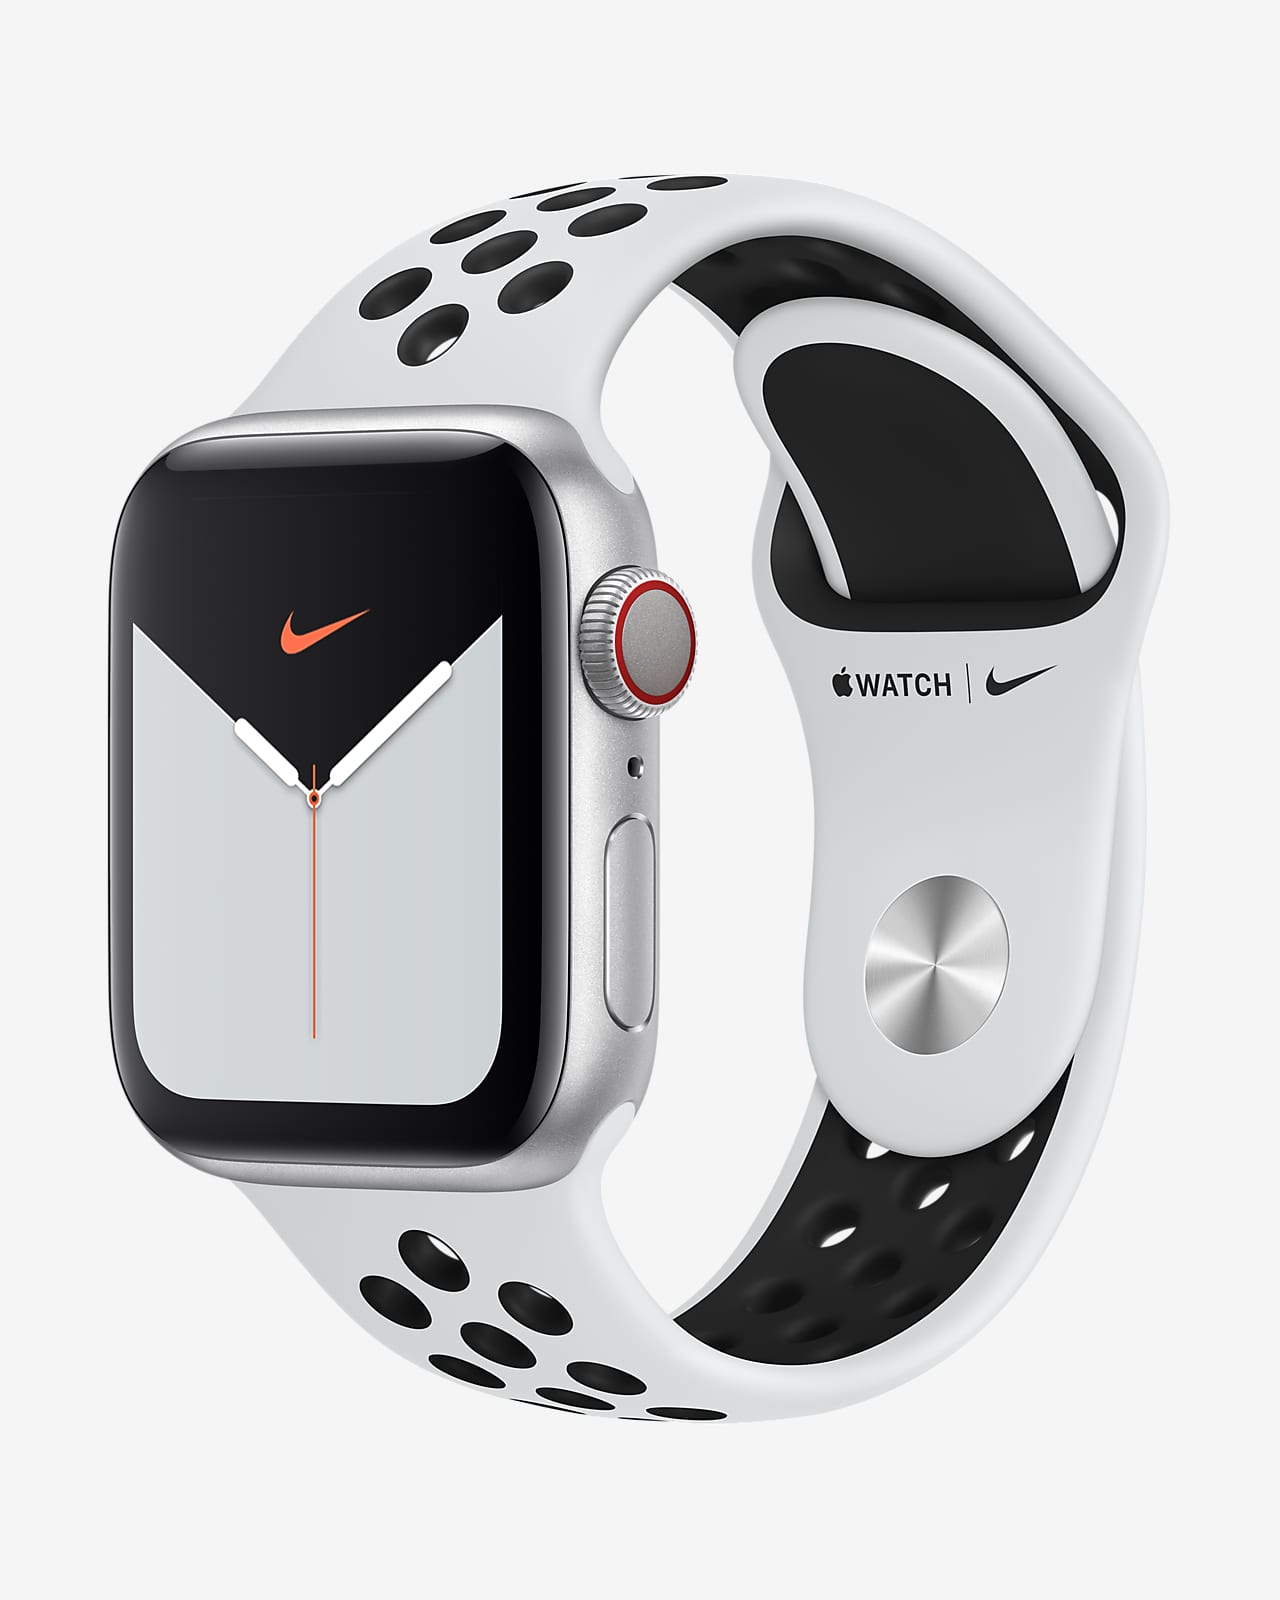 Apple Watch Nike 5 (GPS + Cellular) med Nike Sportsrem Open 44 mm urkasse i sølvfarvet aluminium. Nike